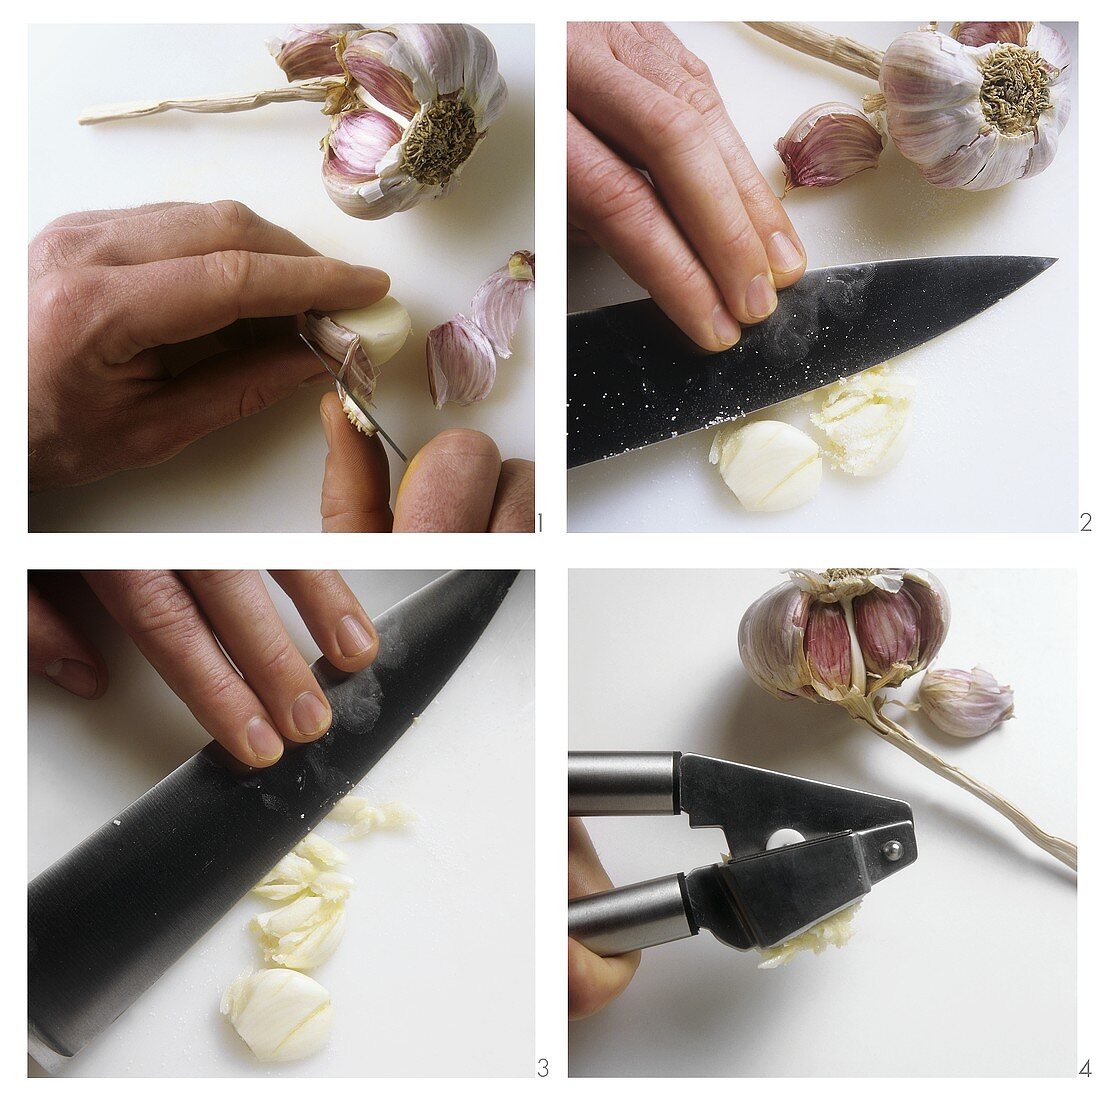 Peeling, crushing or pressing garlic